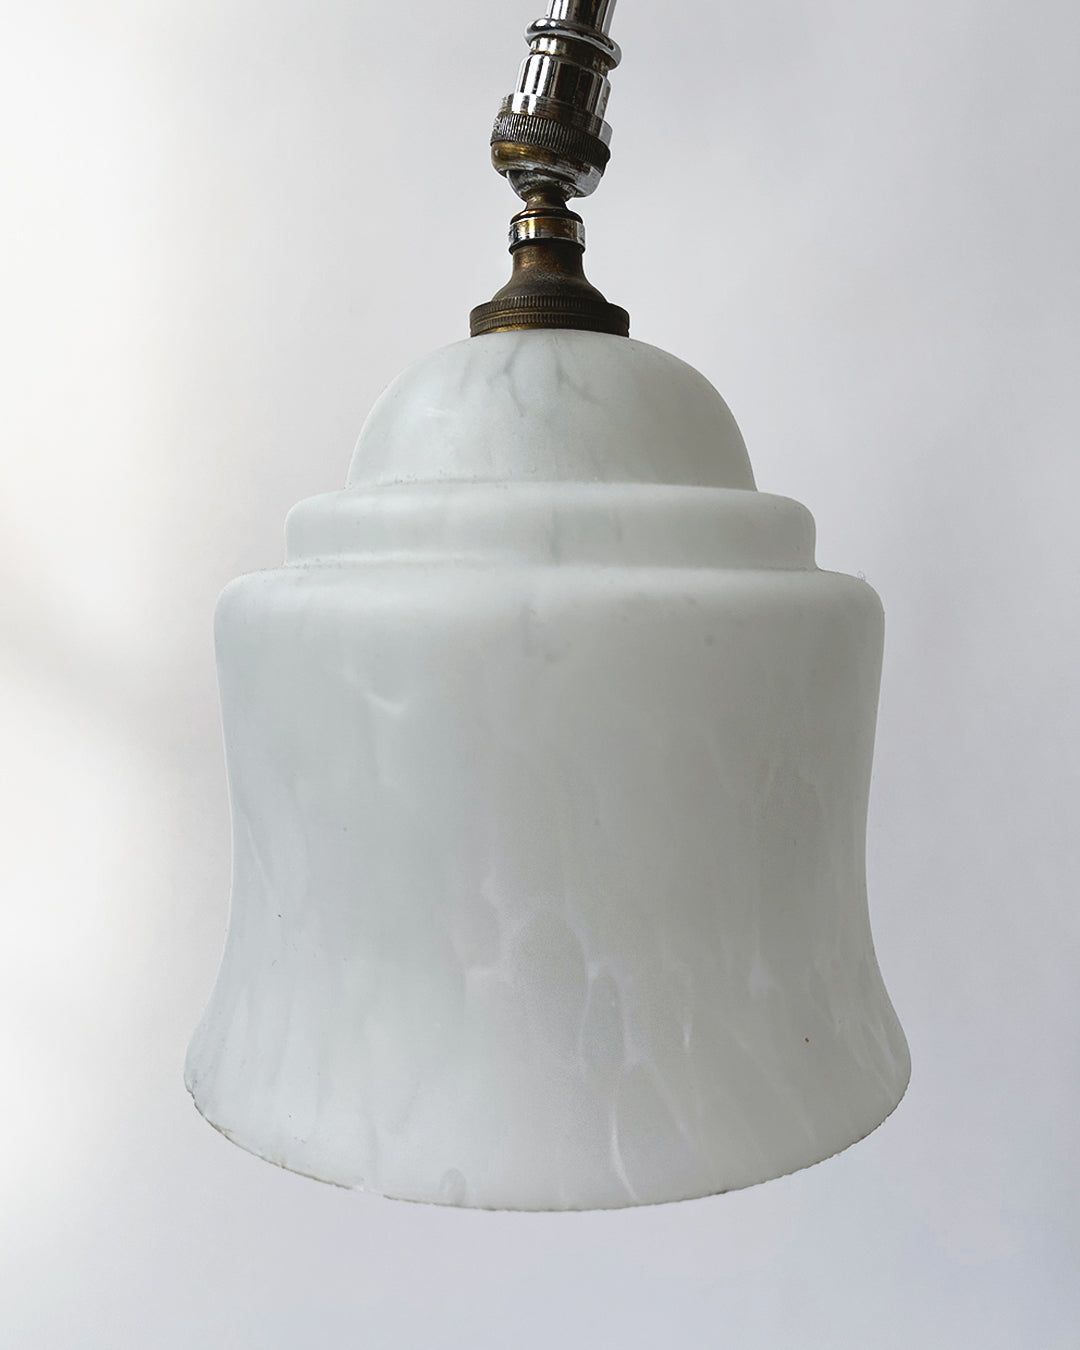 Bestlite BL1 Table Lamp - 20th Century Design Classic